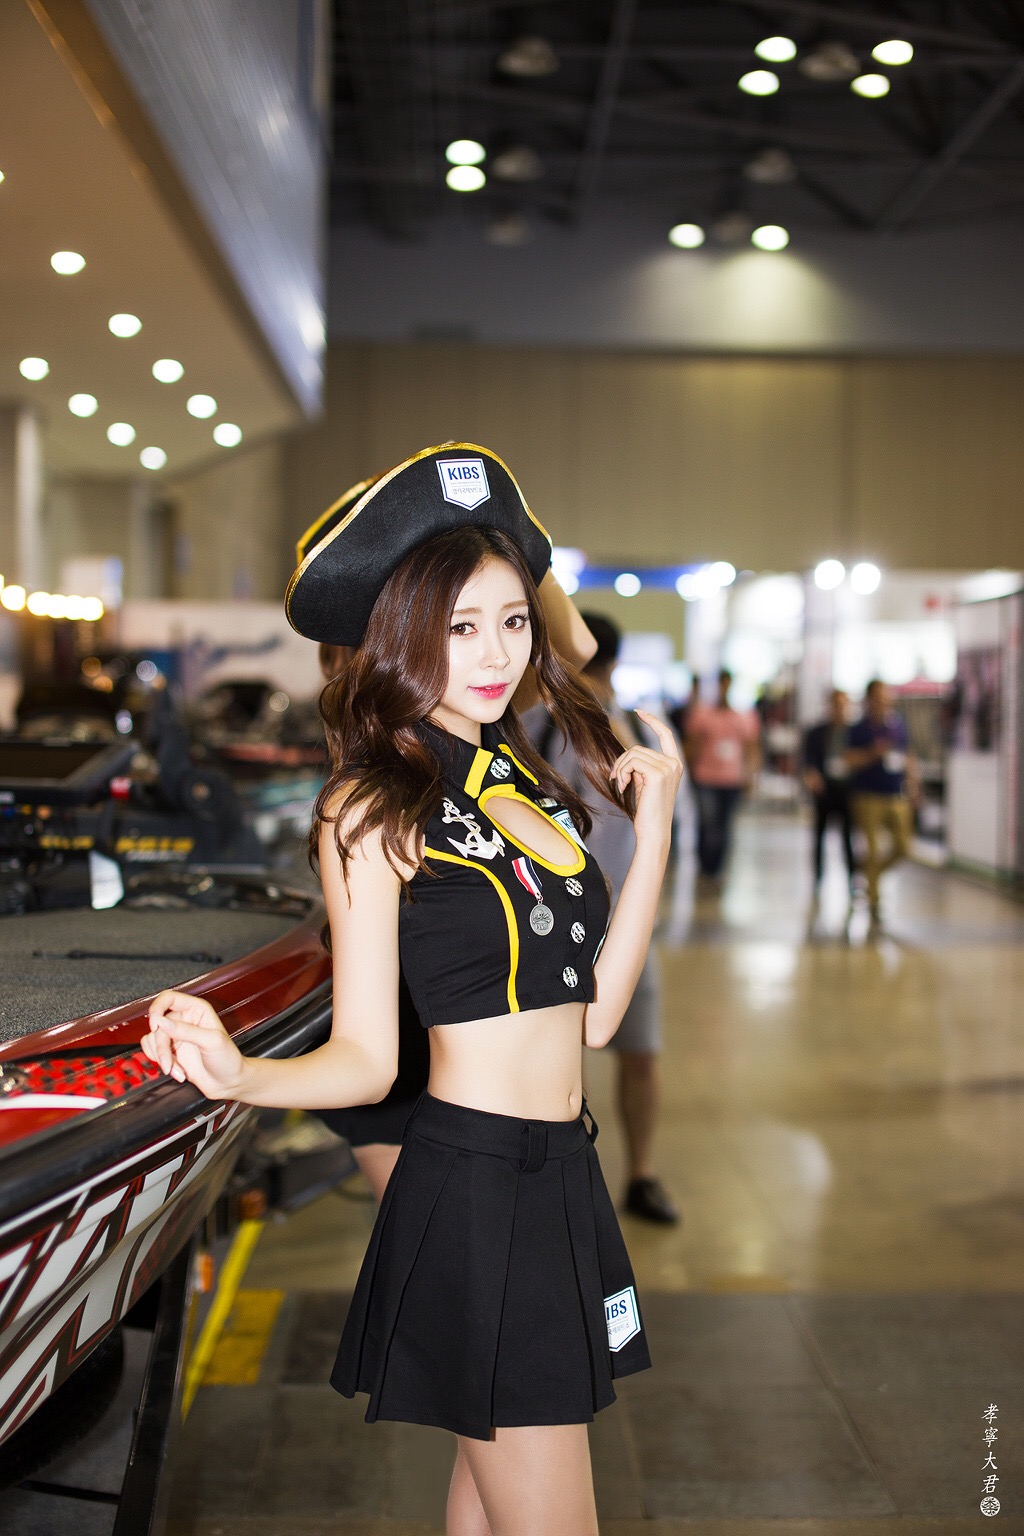 韩国迷你裙御姐车模美胸俏丽迷人写真